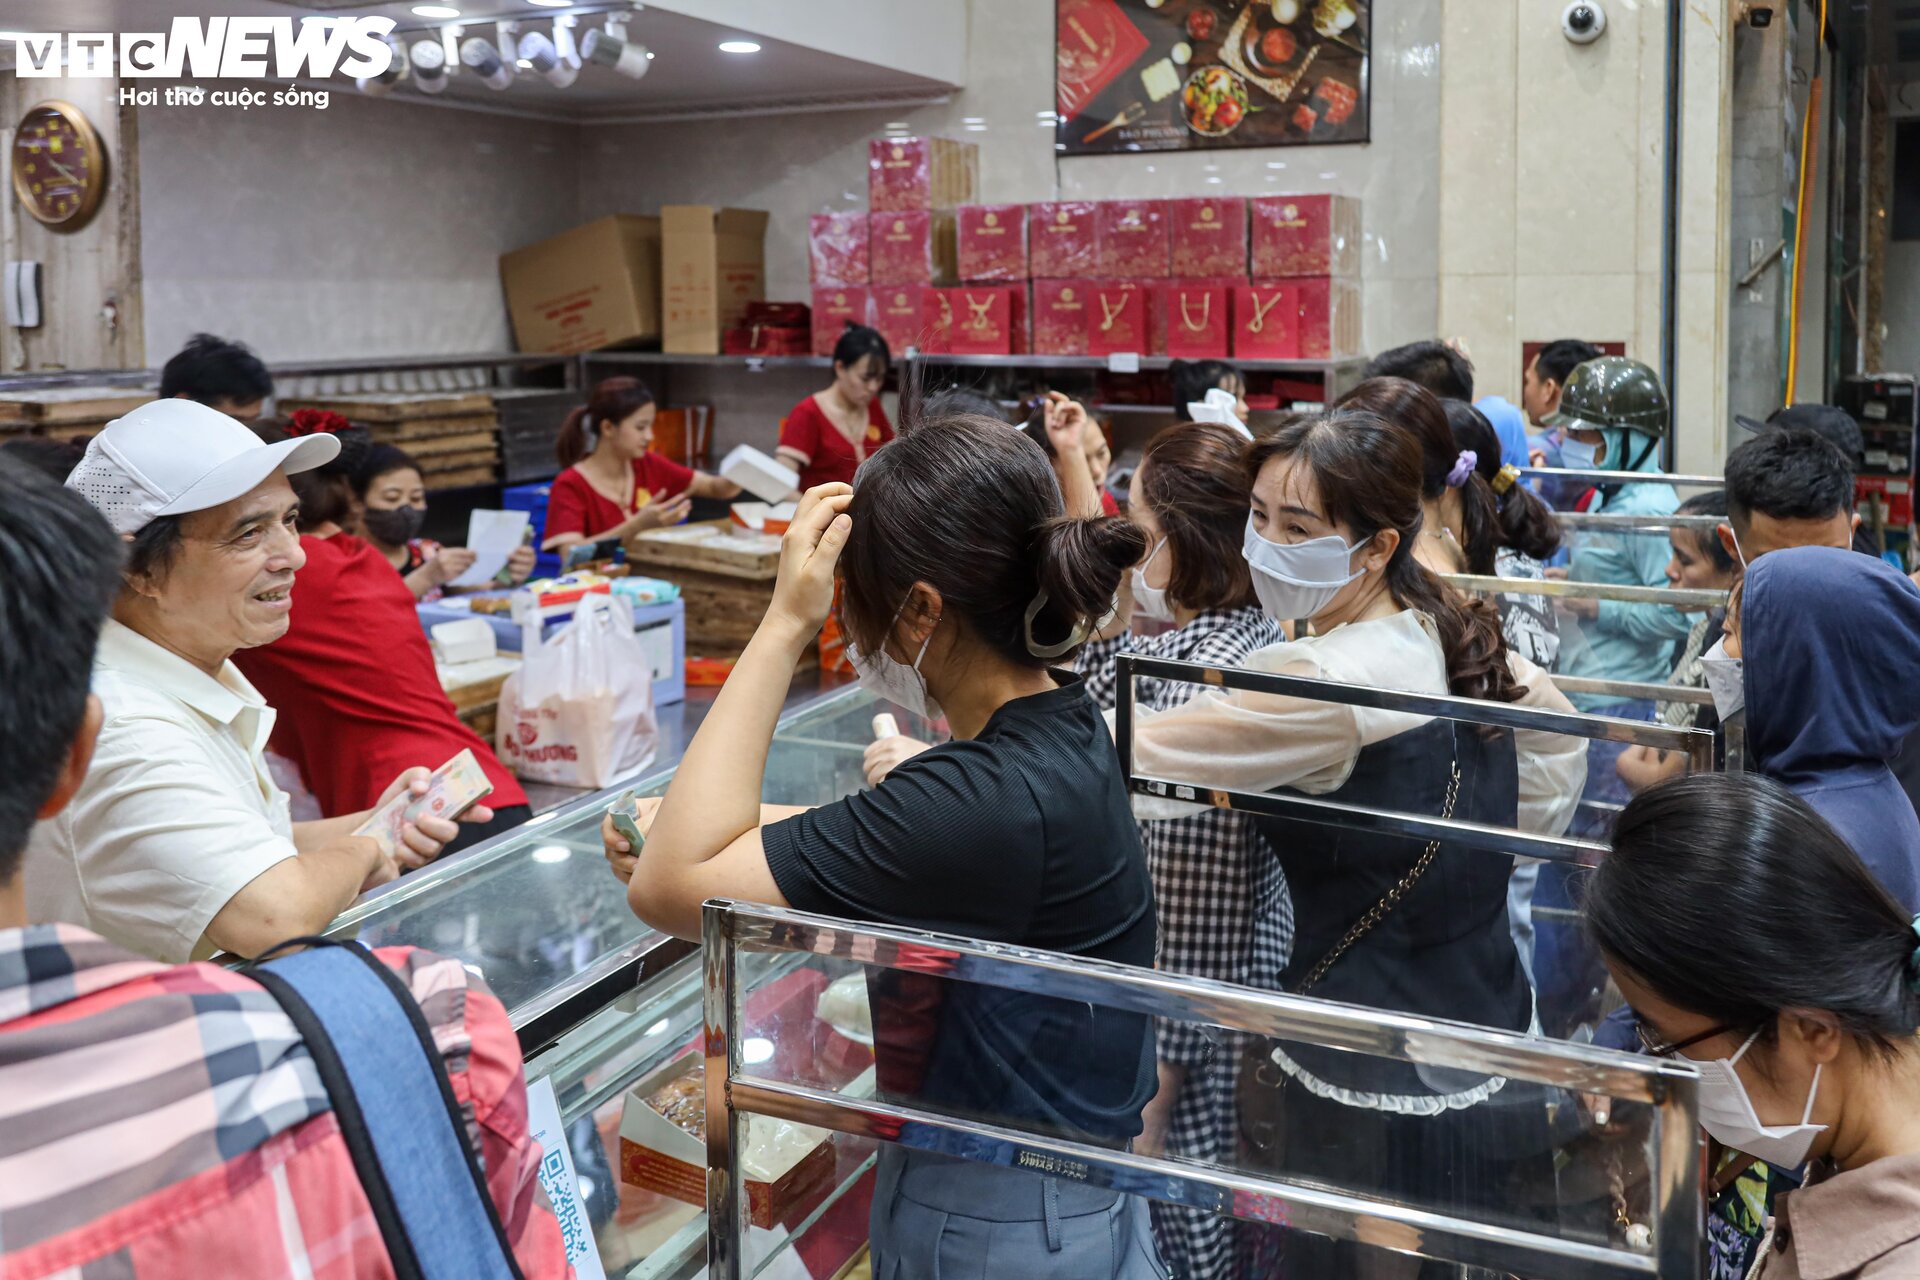 Hàng trăm người xếp hàng chờ mua bánh trung thu ở Hà Nội - 15